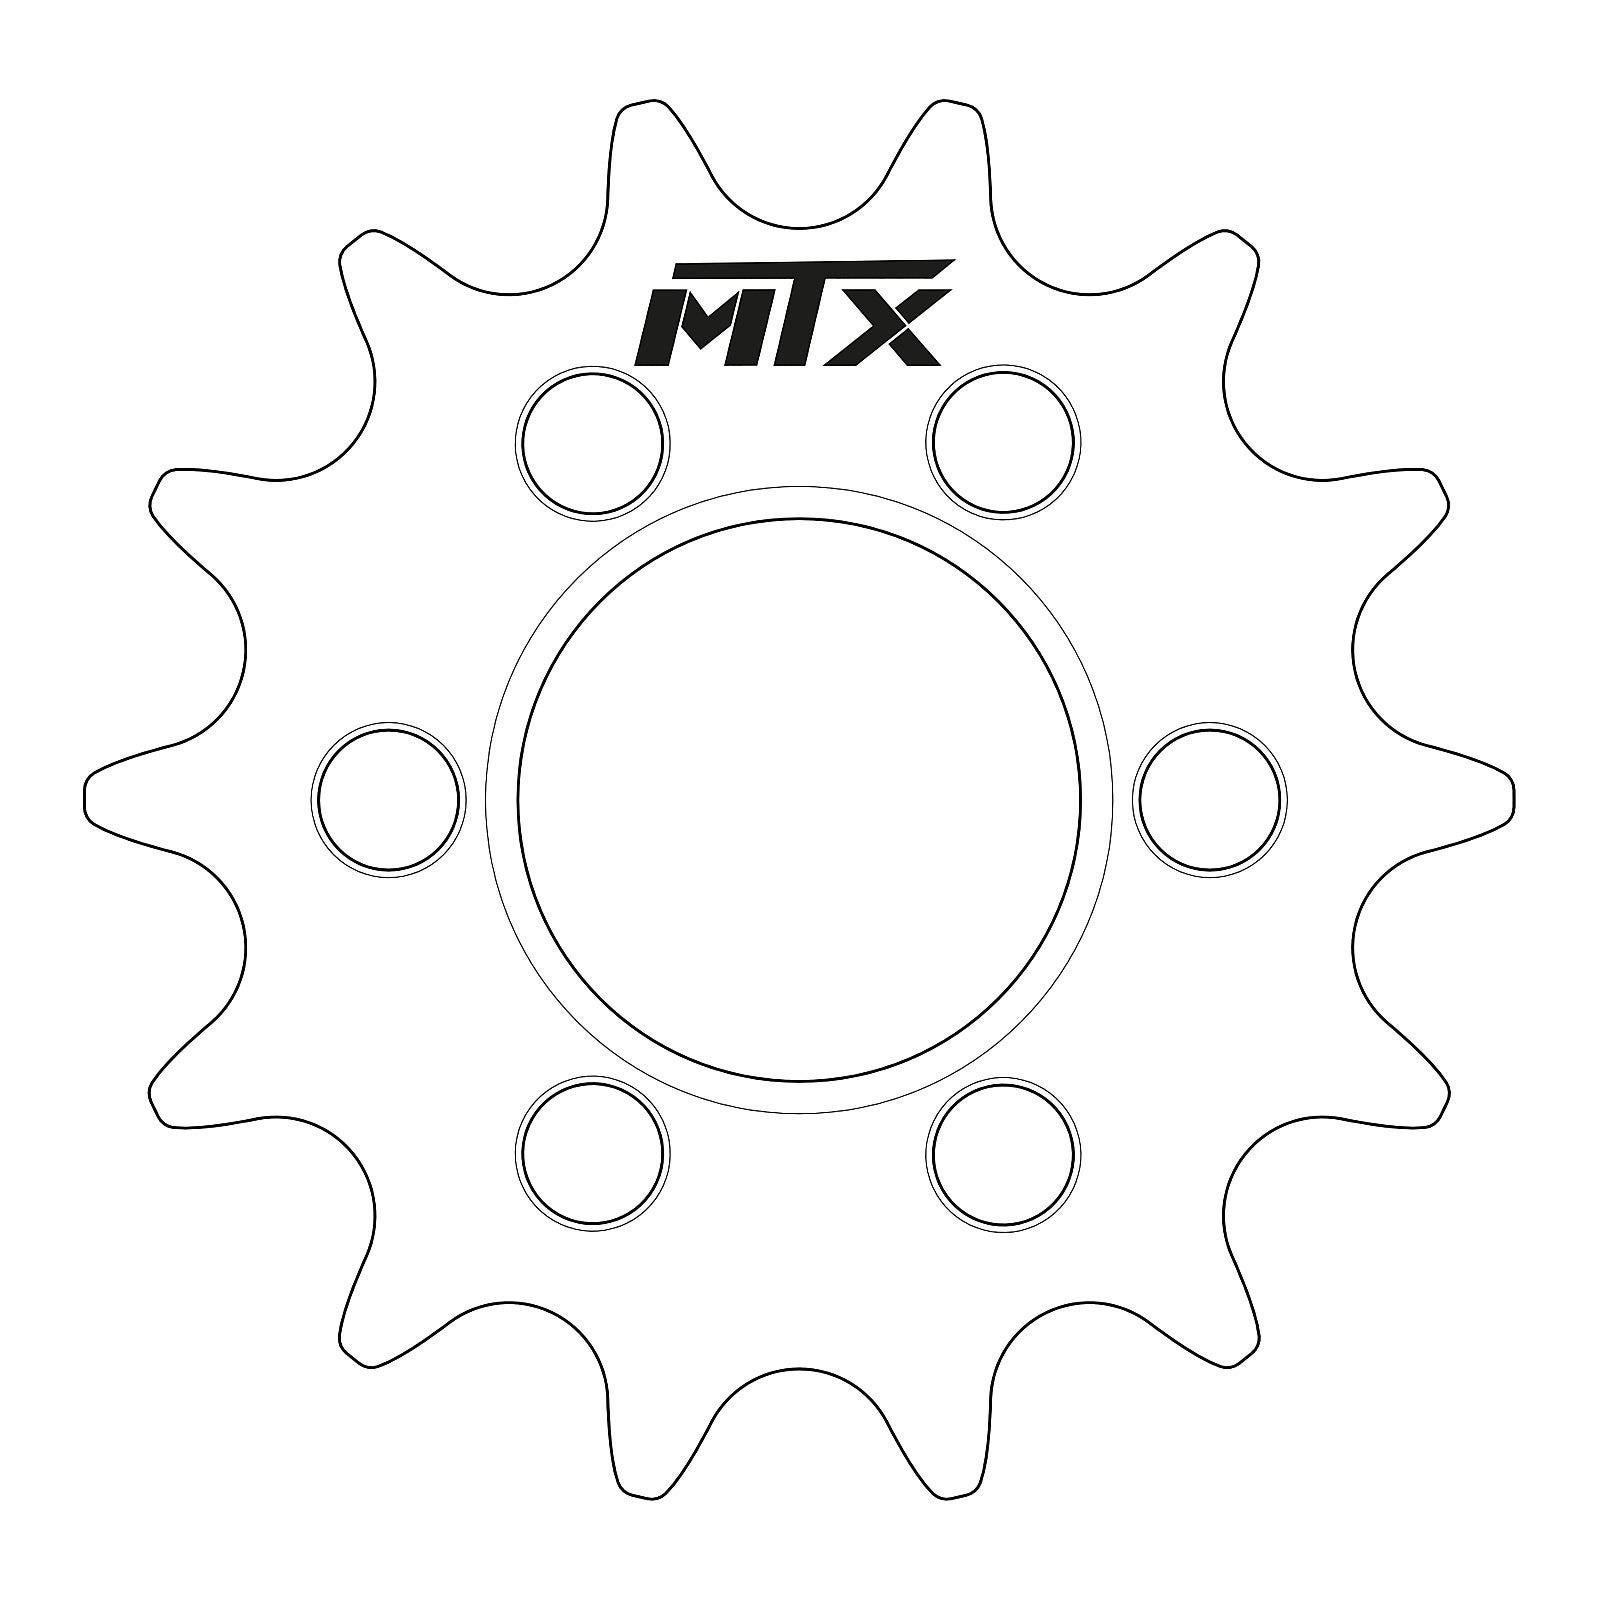 MTX 1185 Steel Front Sprocket #520 (17T) (10-1185-17)